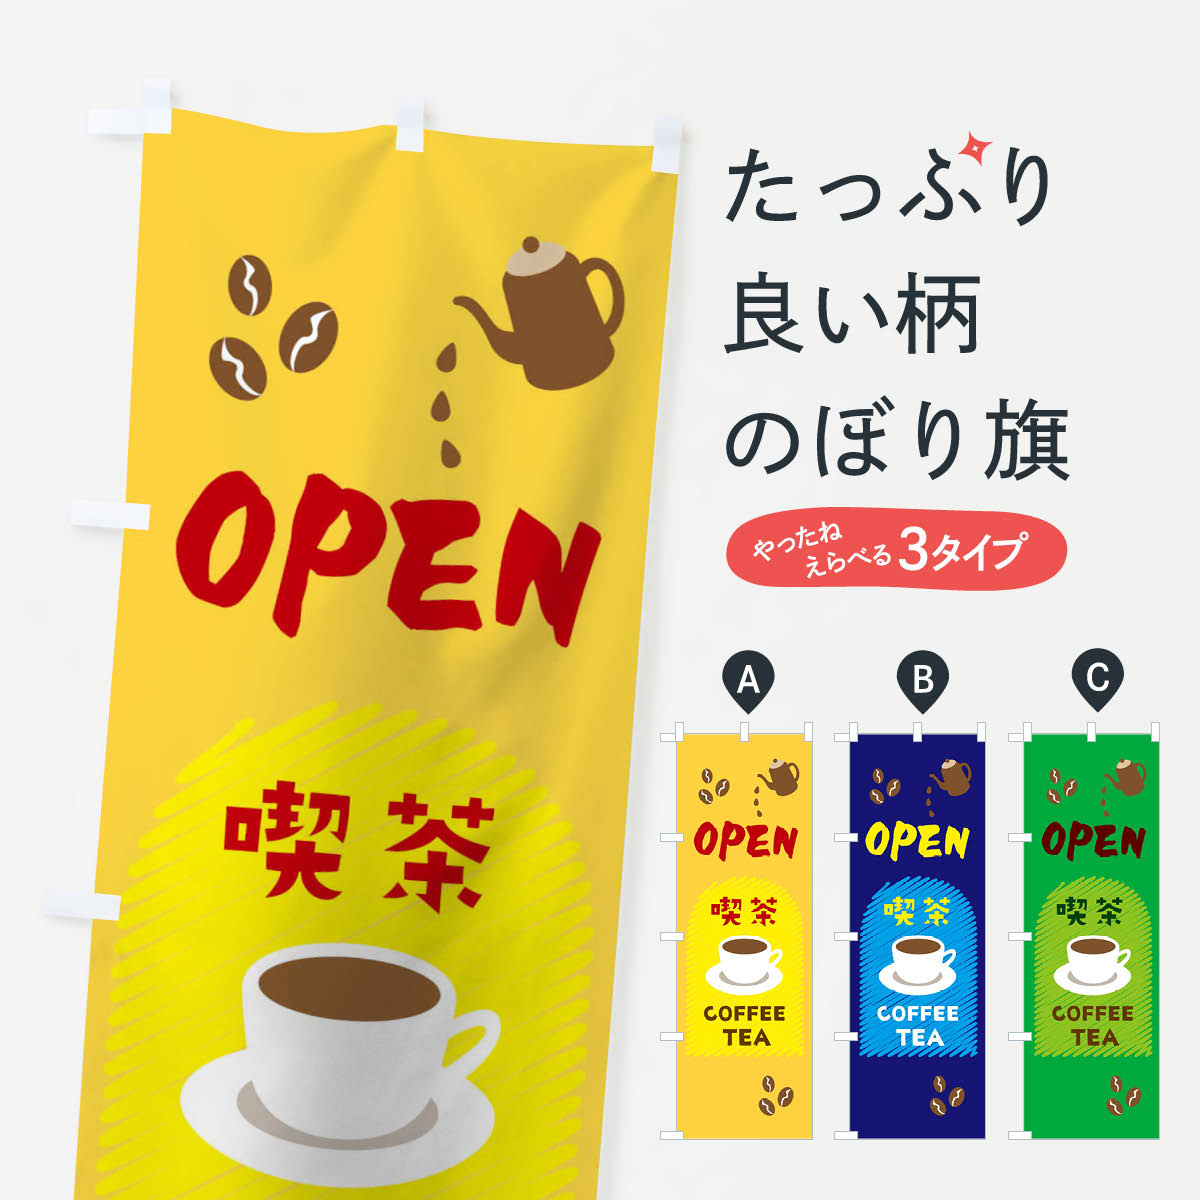  のぼり旗 OPEN喫茶のぼり 09R3  COFFEE TEA オープン